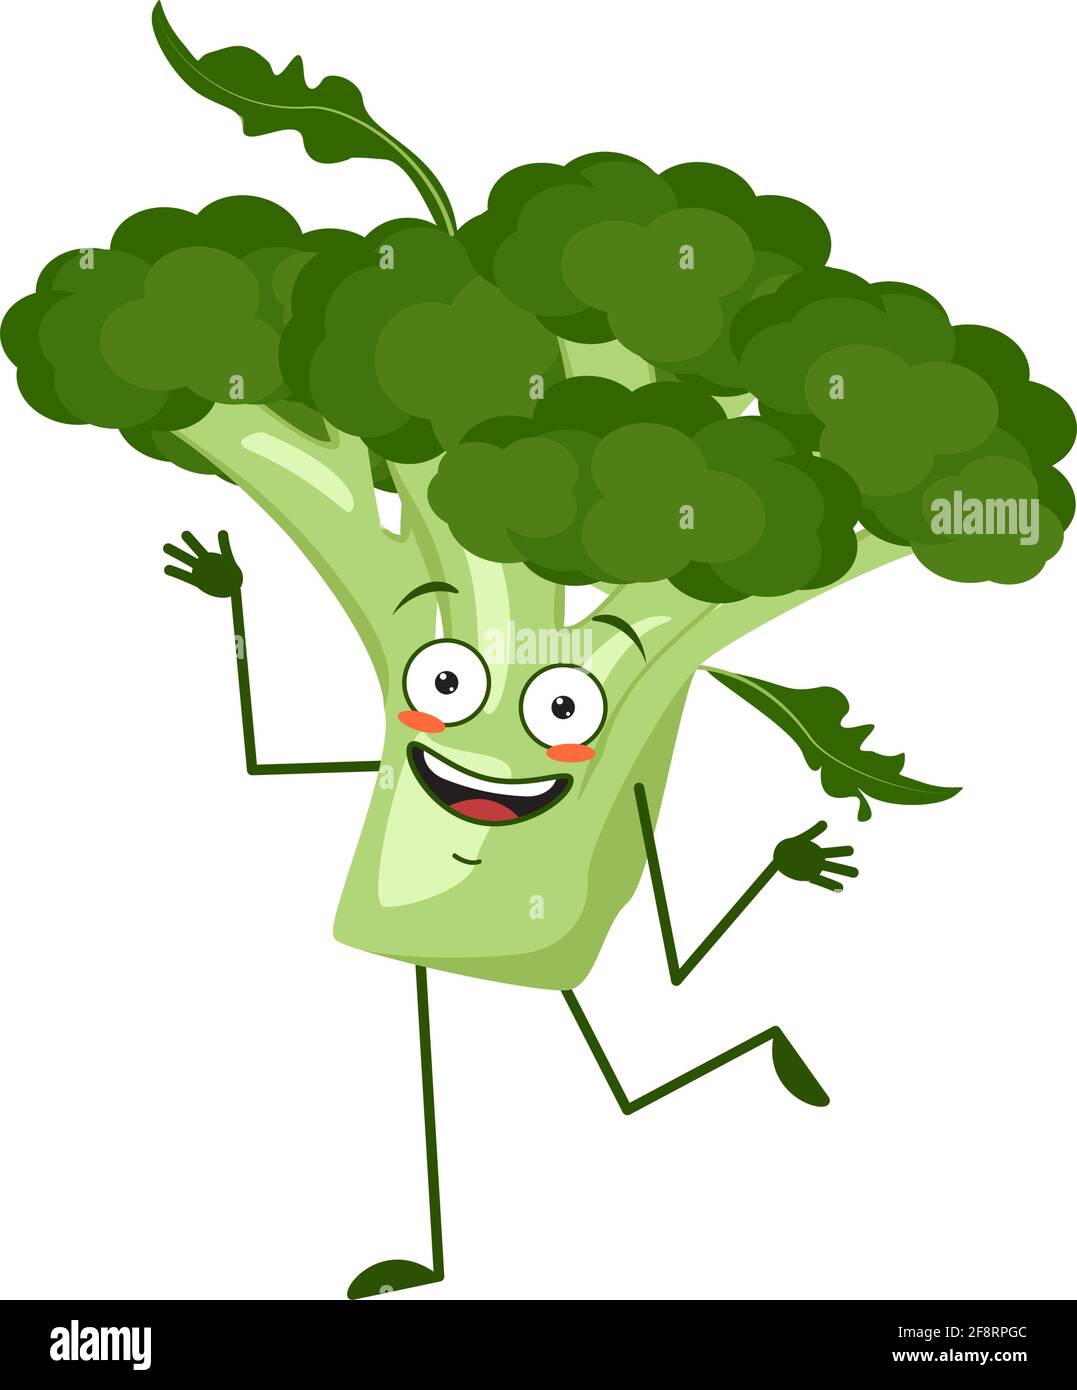 Carino broccoli carattere allegro con emozioni danzanti, braccia e gambe. L'eroe divertente o sorriso, verdure verdi o cavolo Illustrazione Vettoriale